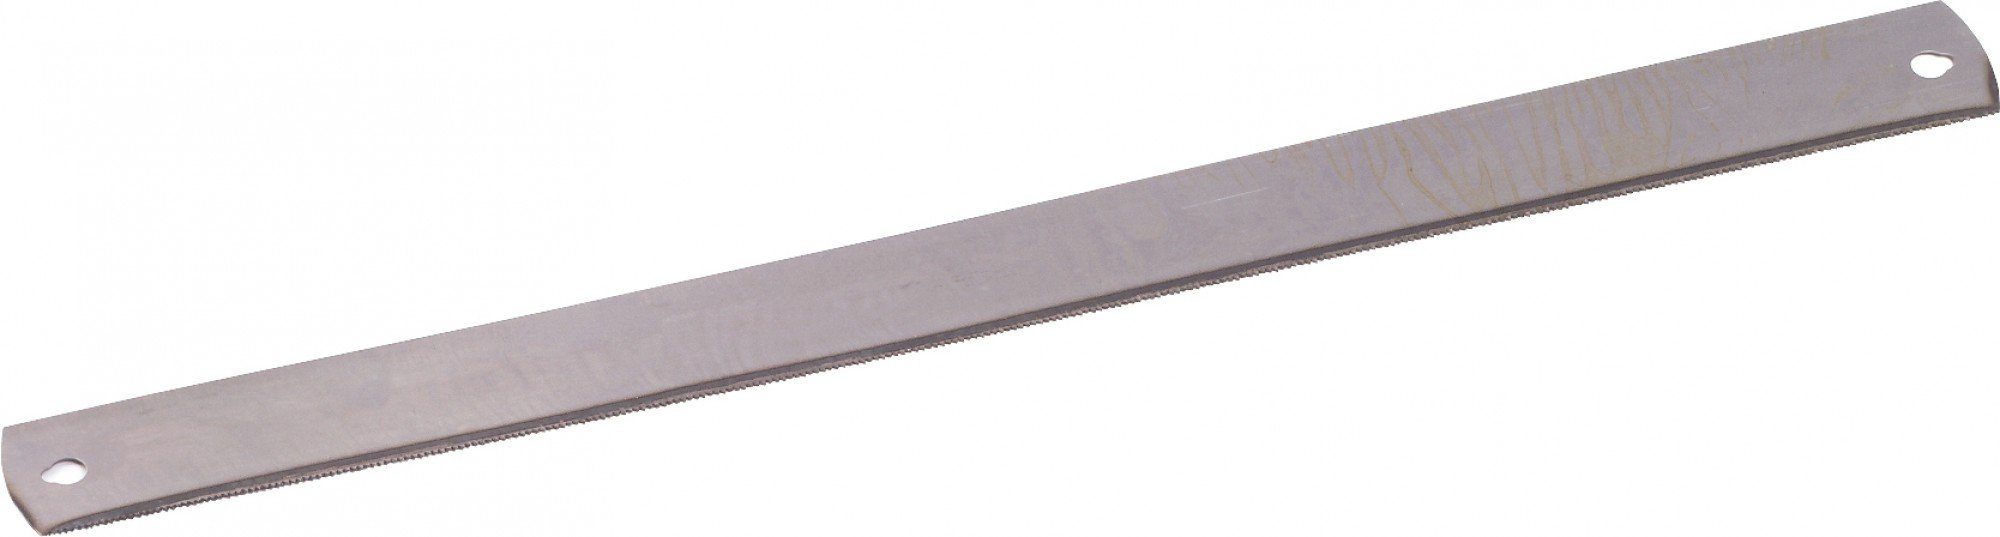 Triuso Sägeblatt Ersatzsägeblatt für Gehrungssäge 14 ZpZ 550mm für Metall & Kunststoff, Lochabstand: 520 mm